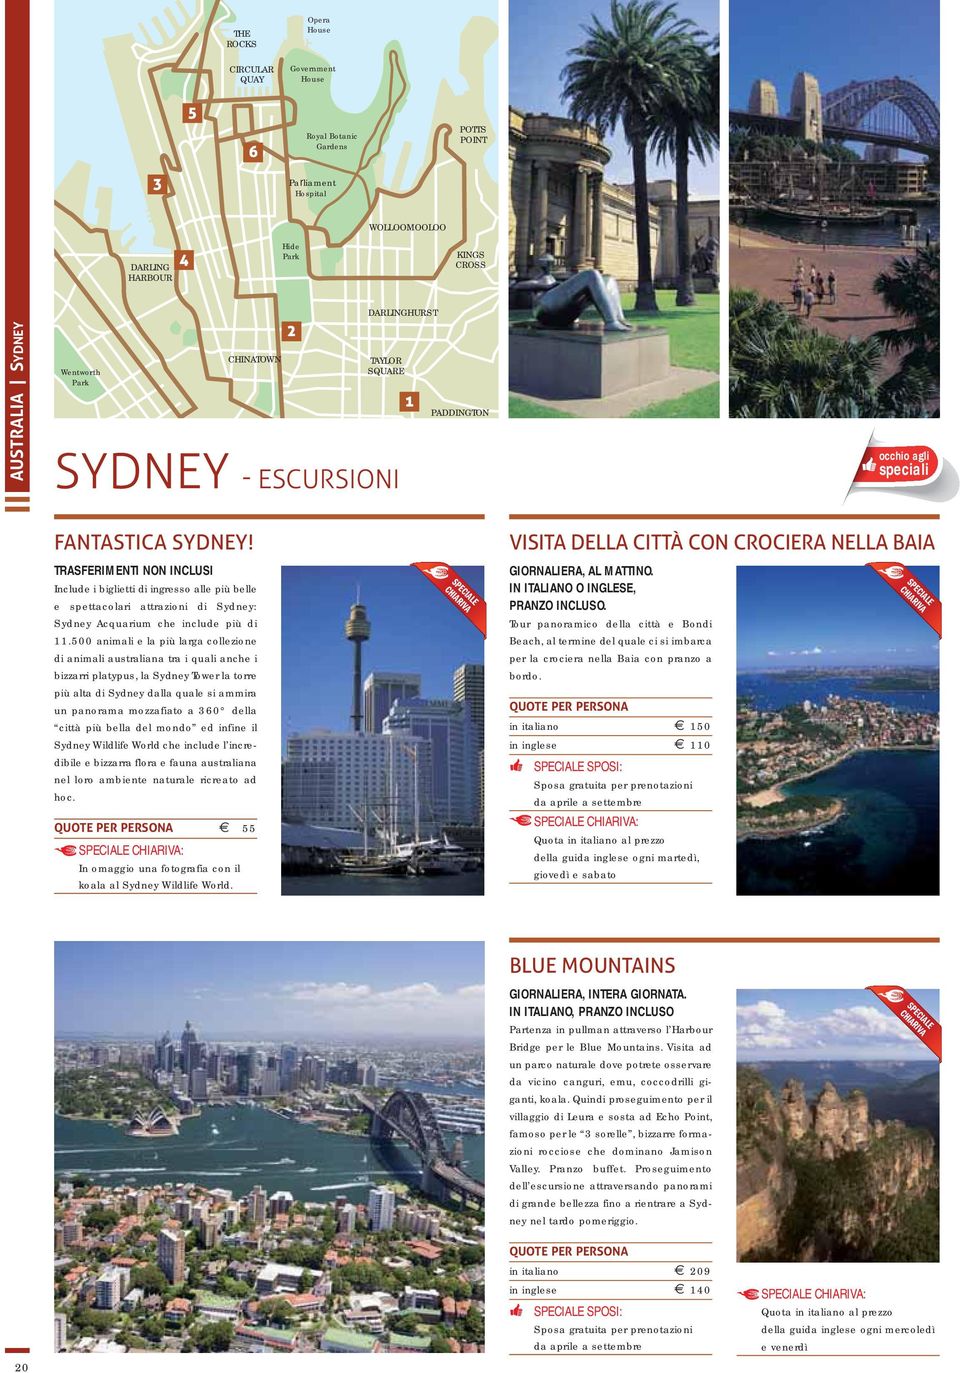 TRASFERIMENTI NON INCLUSI Include i biglietti di ingresso alle più belle e spettacolari attrazioni di Sydney: Sydney Acquarium che include più di 11.